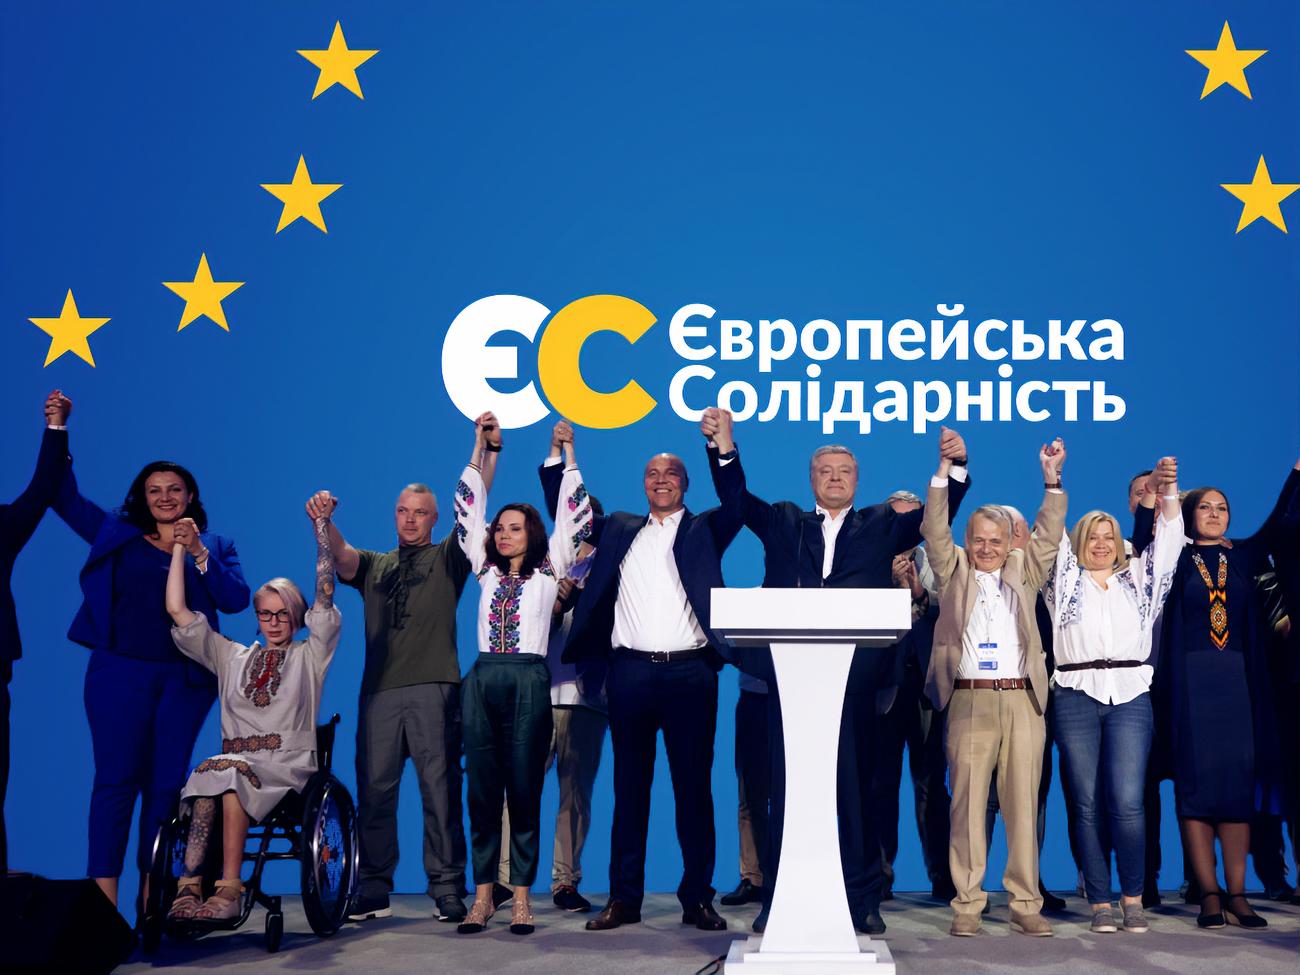 Партия Порошенко идет в отрыв: ЕС стала лидером в Украине по росту электоральных симпатий - рейтинг КМИС